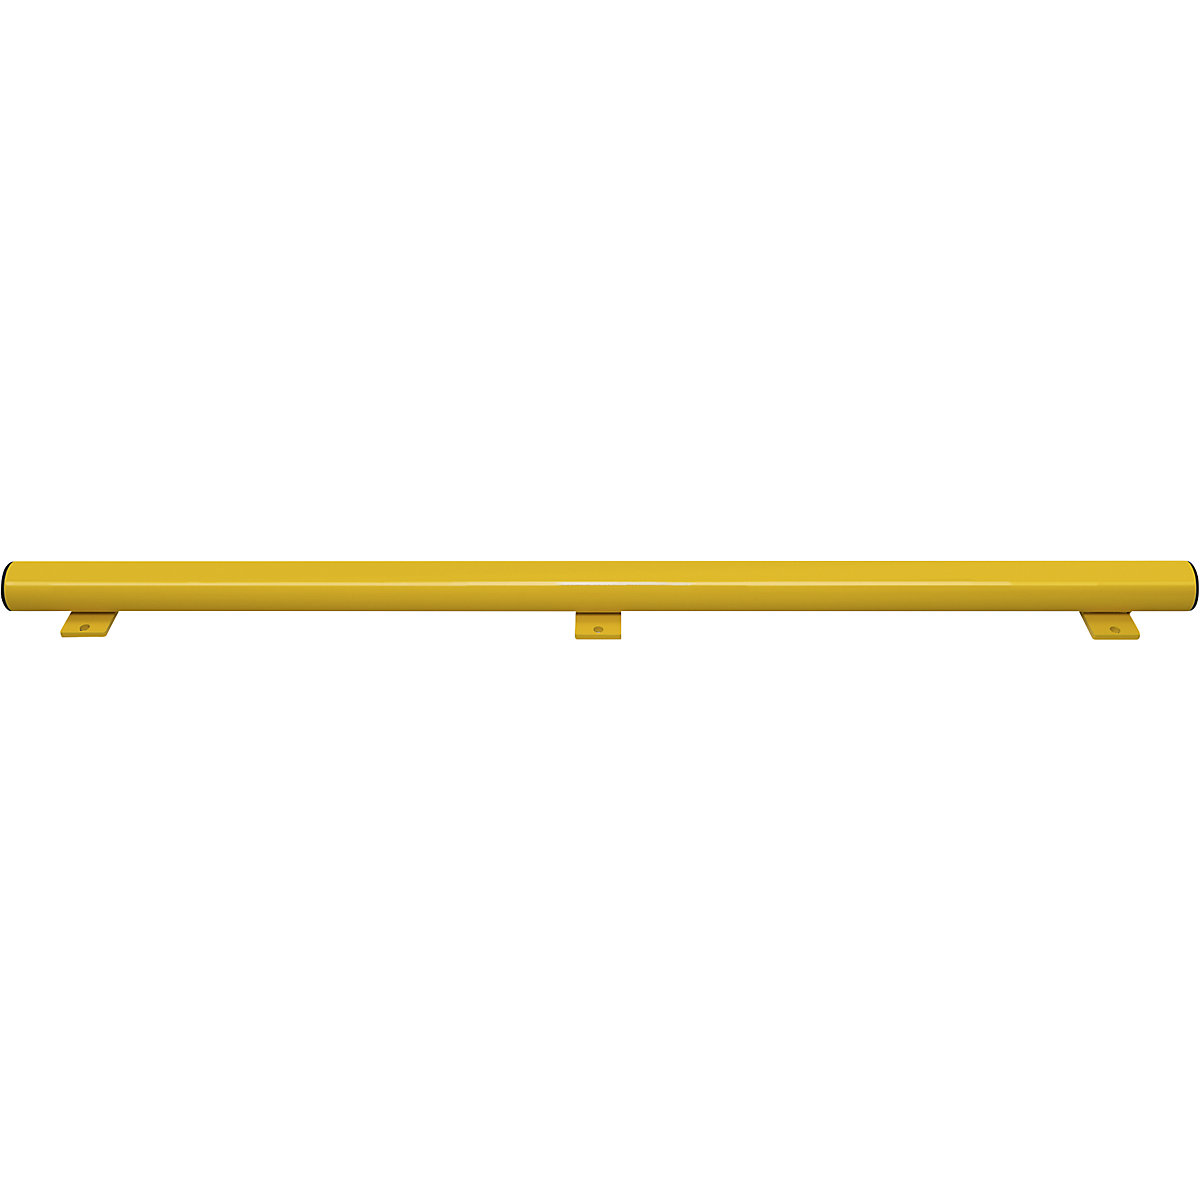 Barre pour lisse basse BLACK BULL, l x h 130 x 86 mm, galvanisé à chaud, jaune plastifié, longueur 1750 mm-4